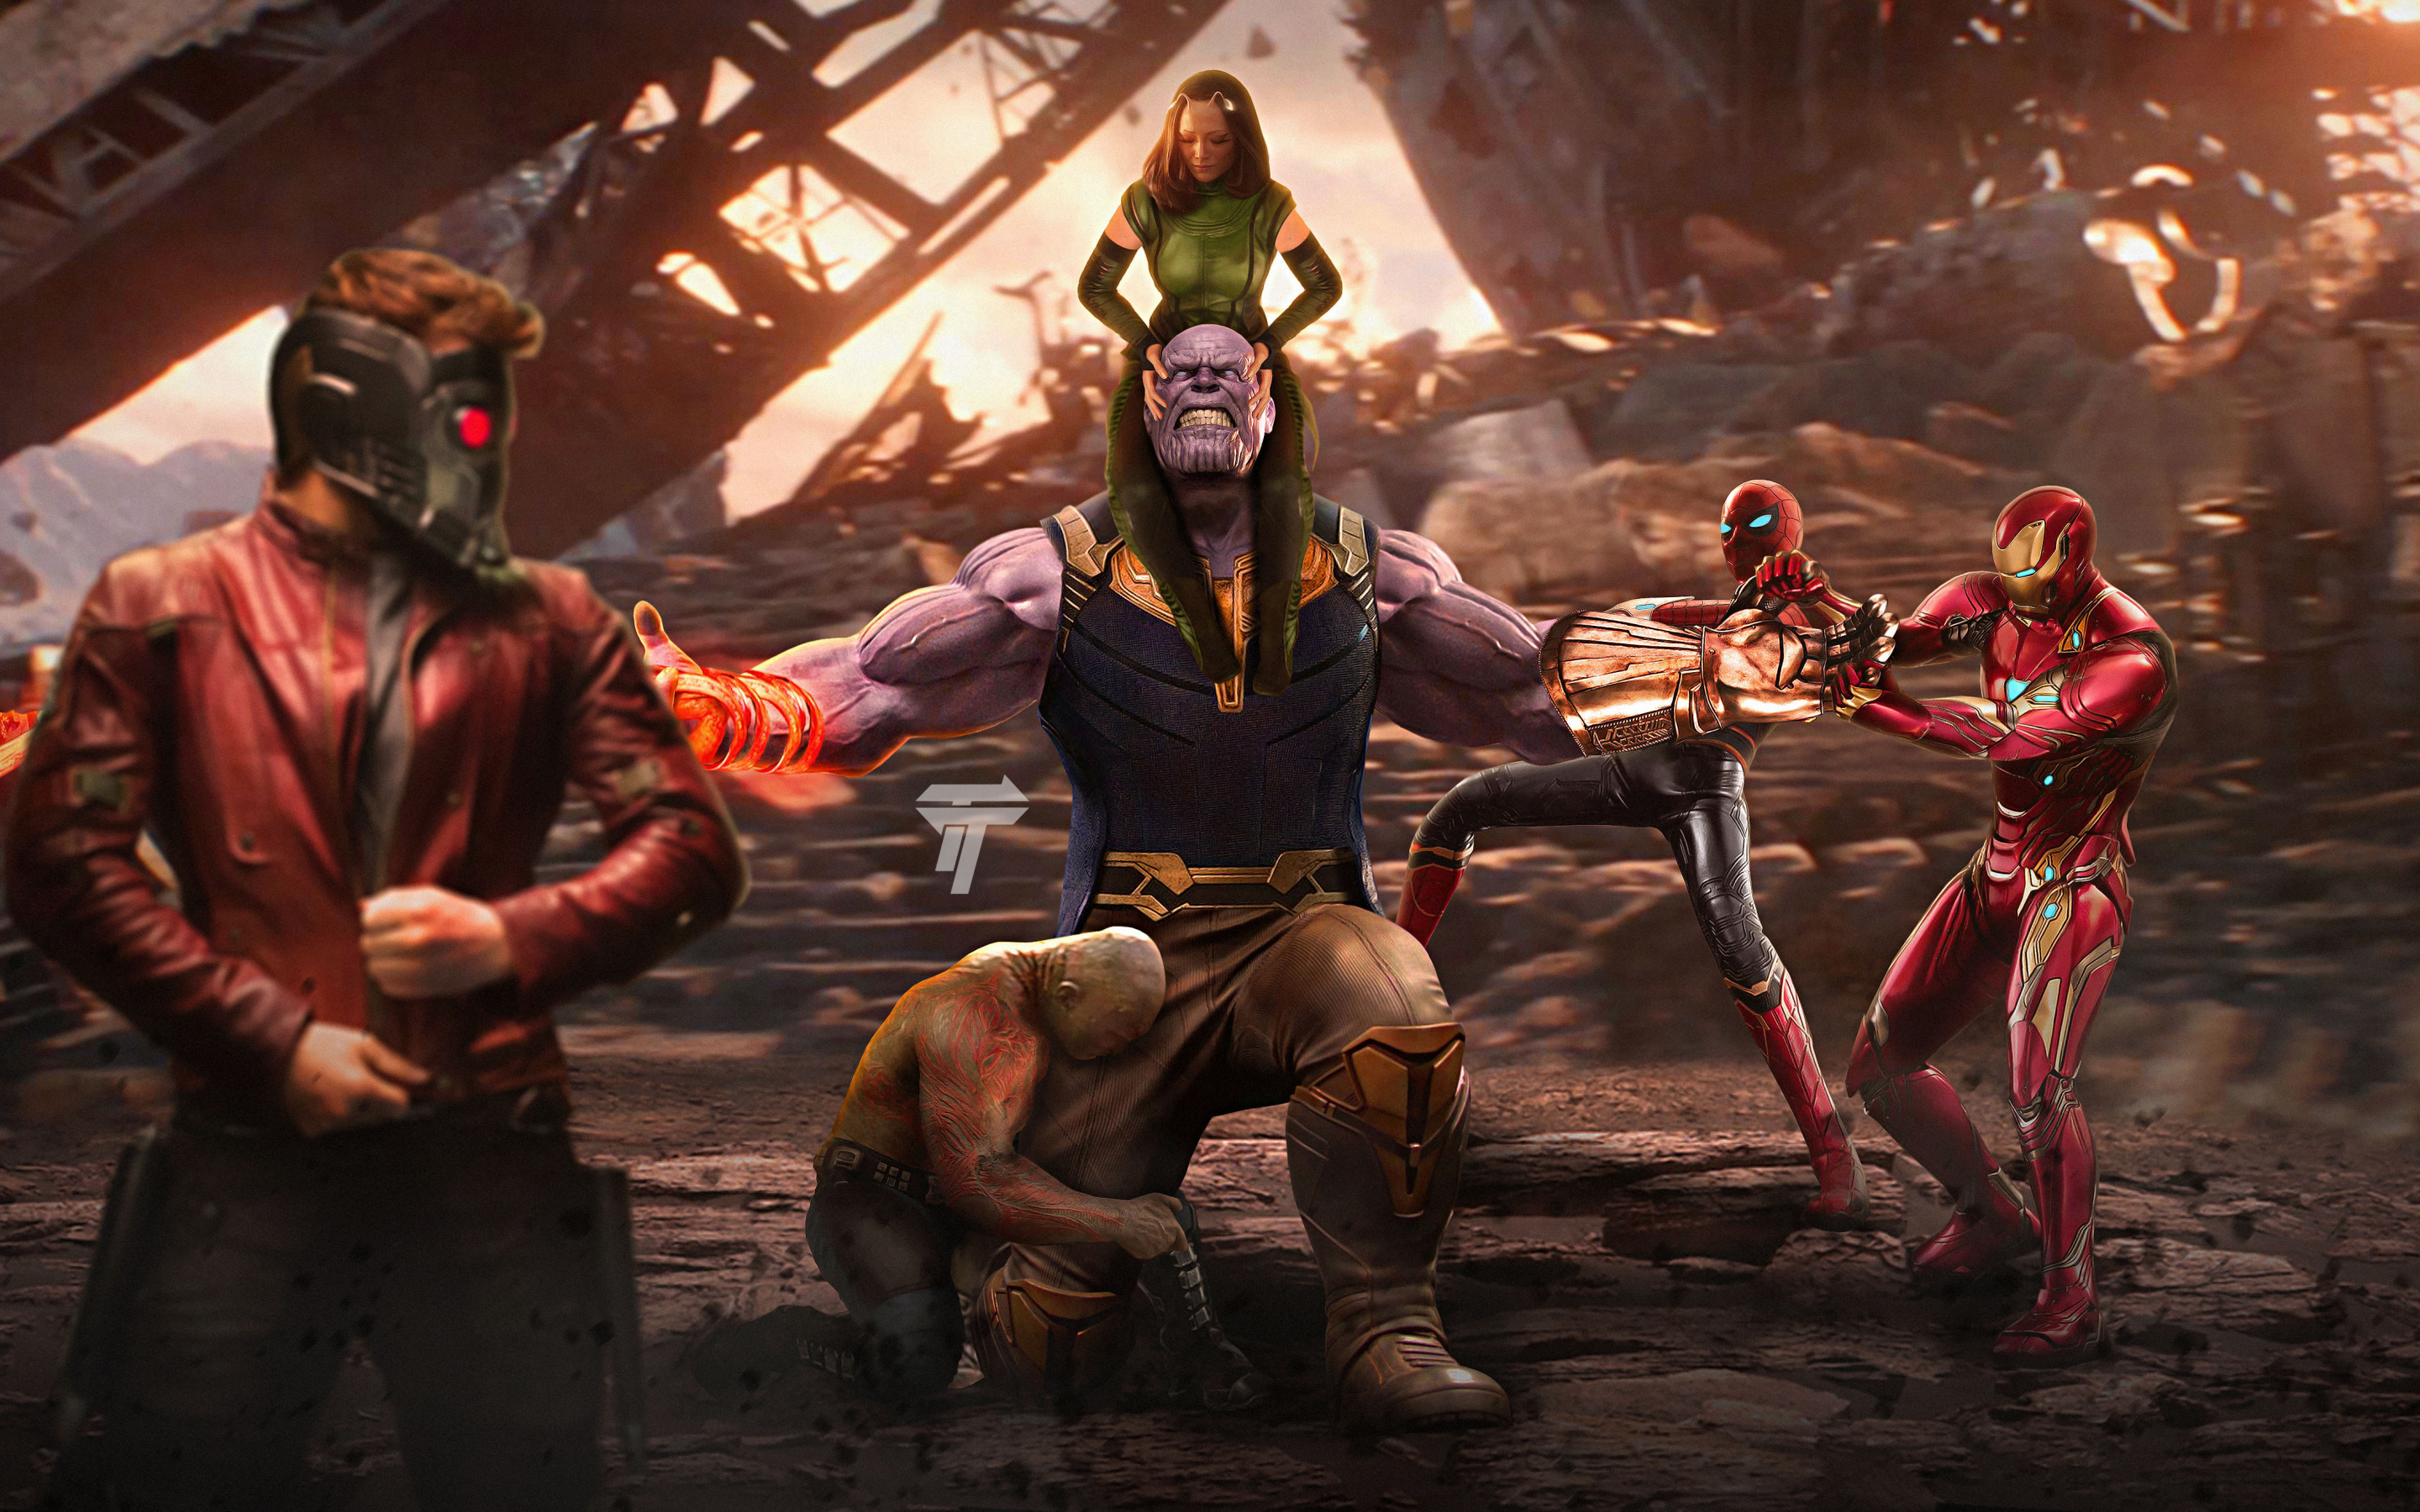 Thanos vs avengers, movie, artwork, 2880x1800 wallpaper